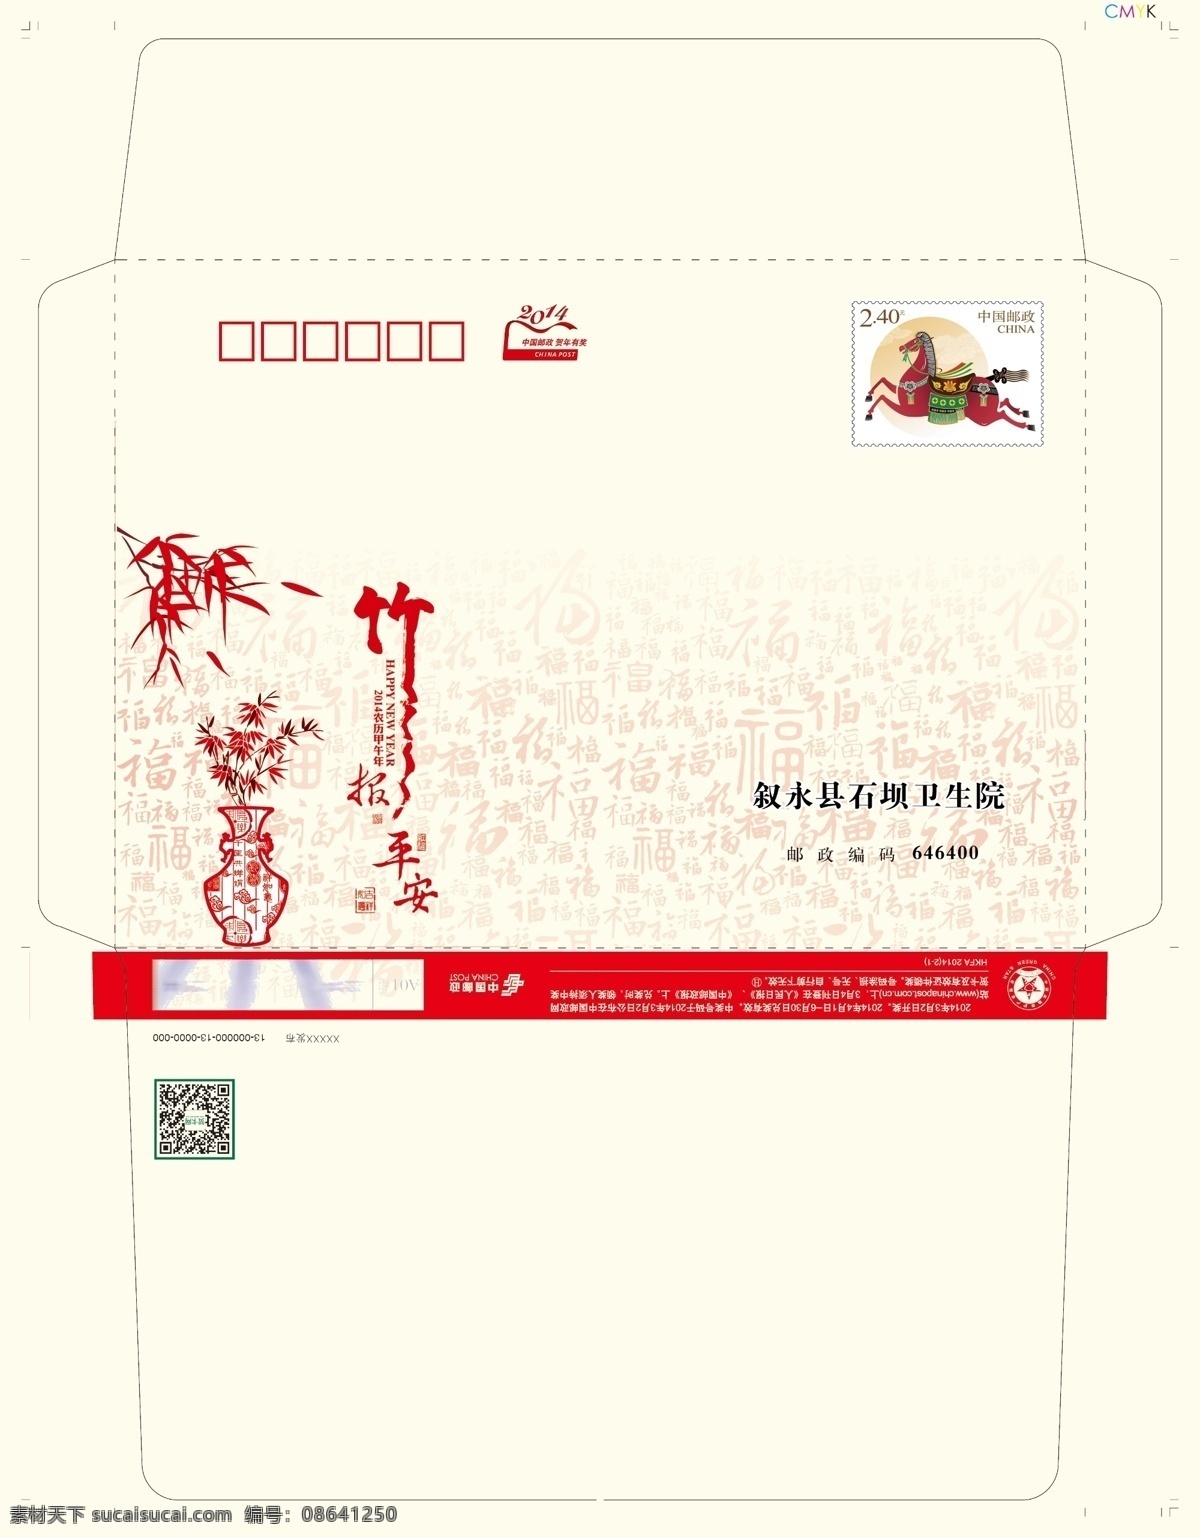 2014年 广告设计模板 贺春 贺卡 贺卡设计 马年 名片卡片 源文件 2014 年 竹报平安 模板下载 名片卡 广告设计名片